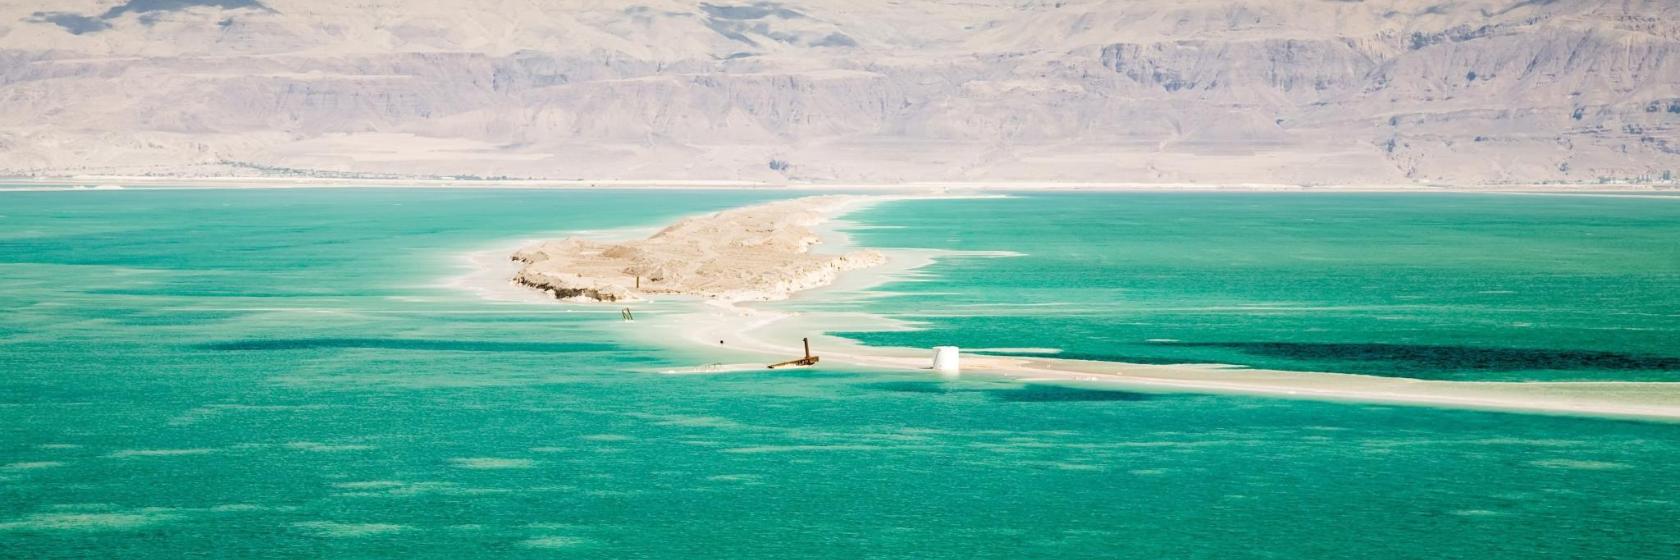 أفضل 10 فنادق في البحر الميت الأردن - أماكن للإقامة في البحر الميت الأردن،  الأردن